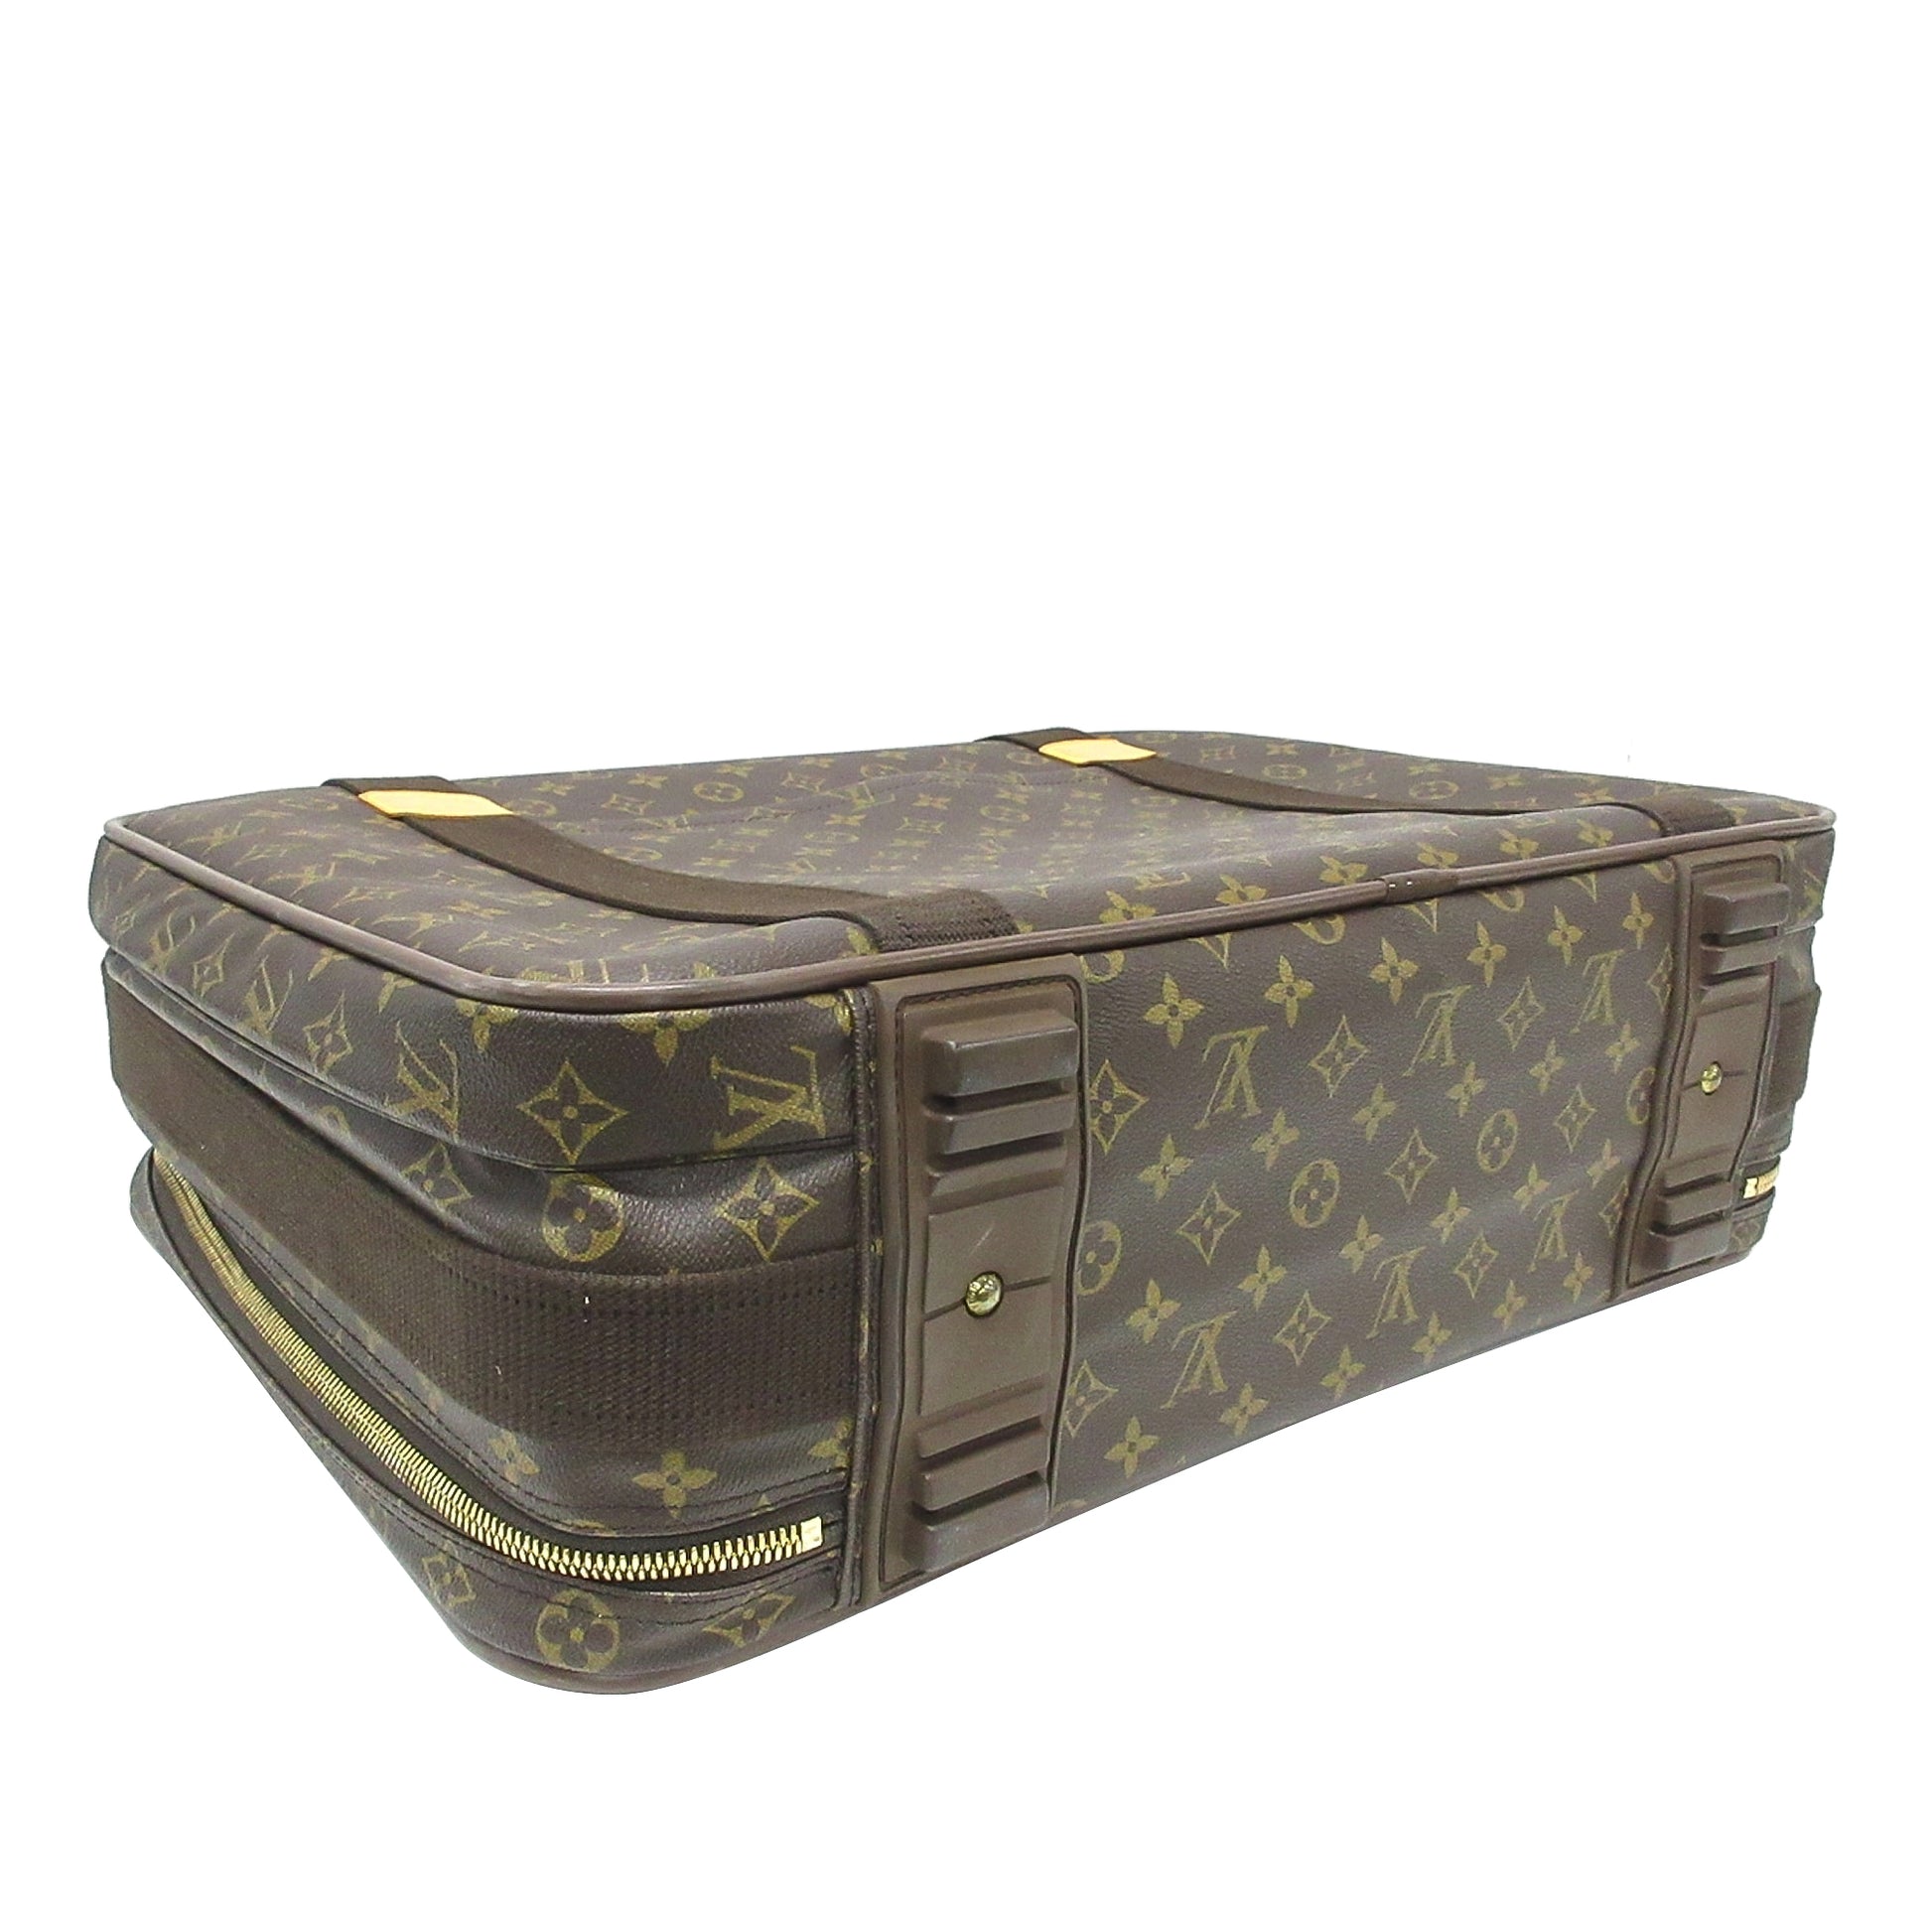 LOUIS VUITTON Monogram Satellite 53 Travel Suitcase Handbag - 30% Off